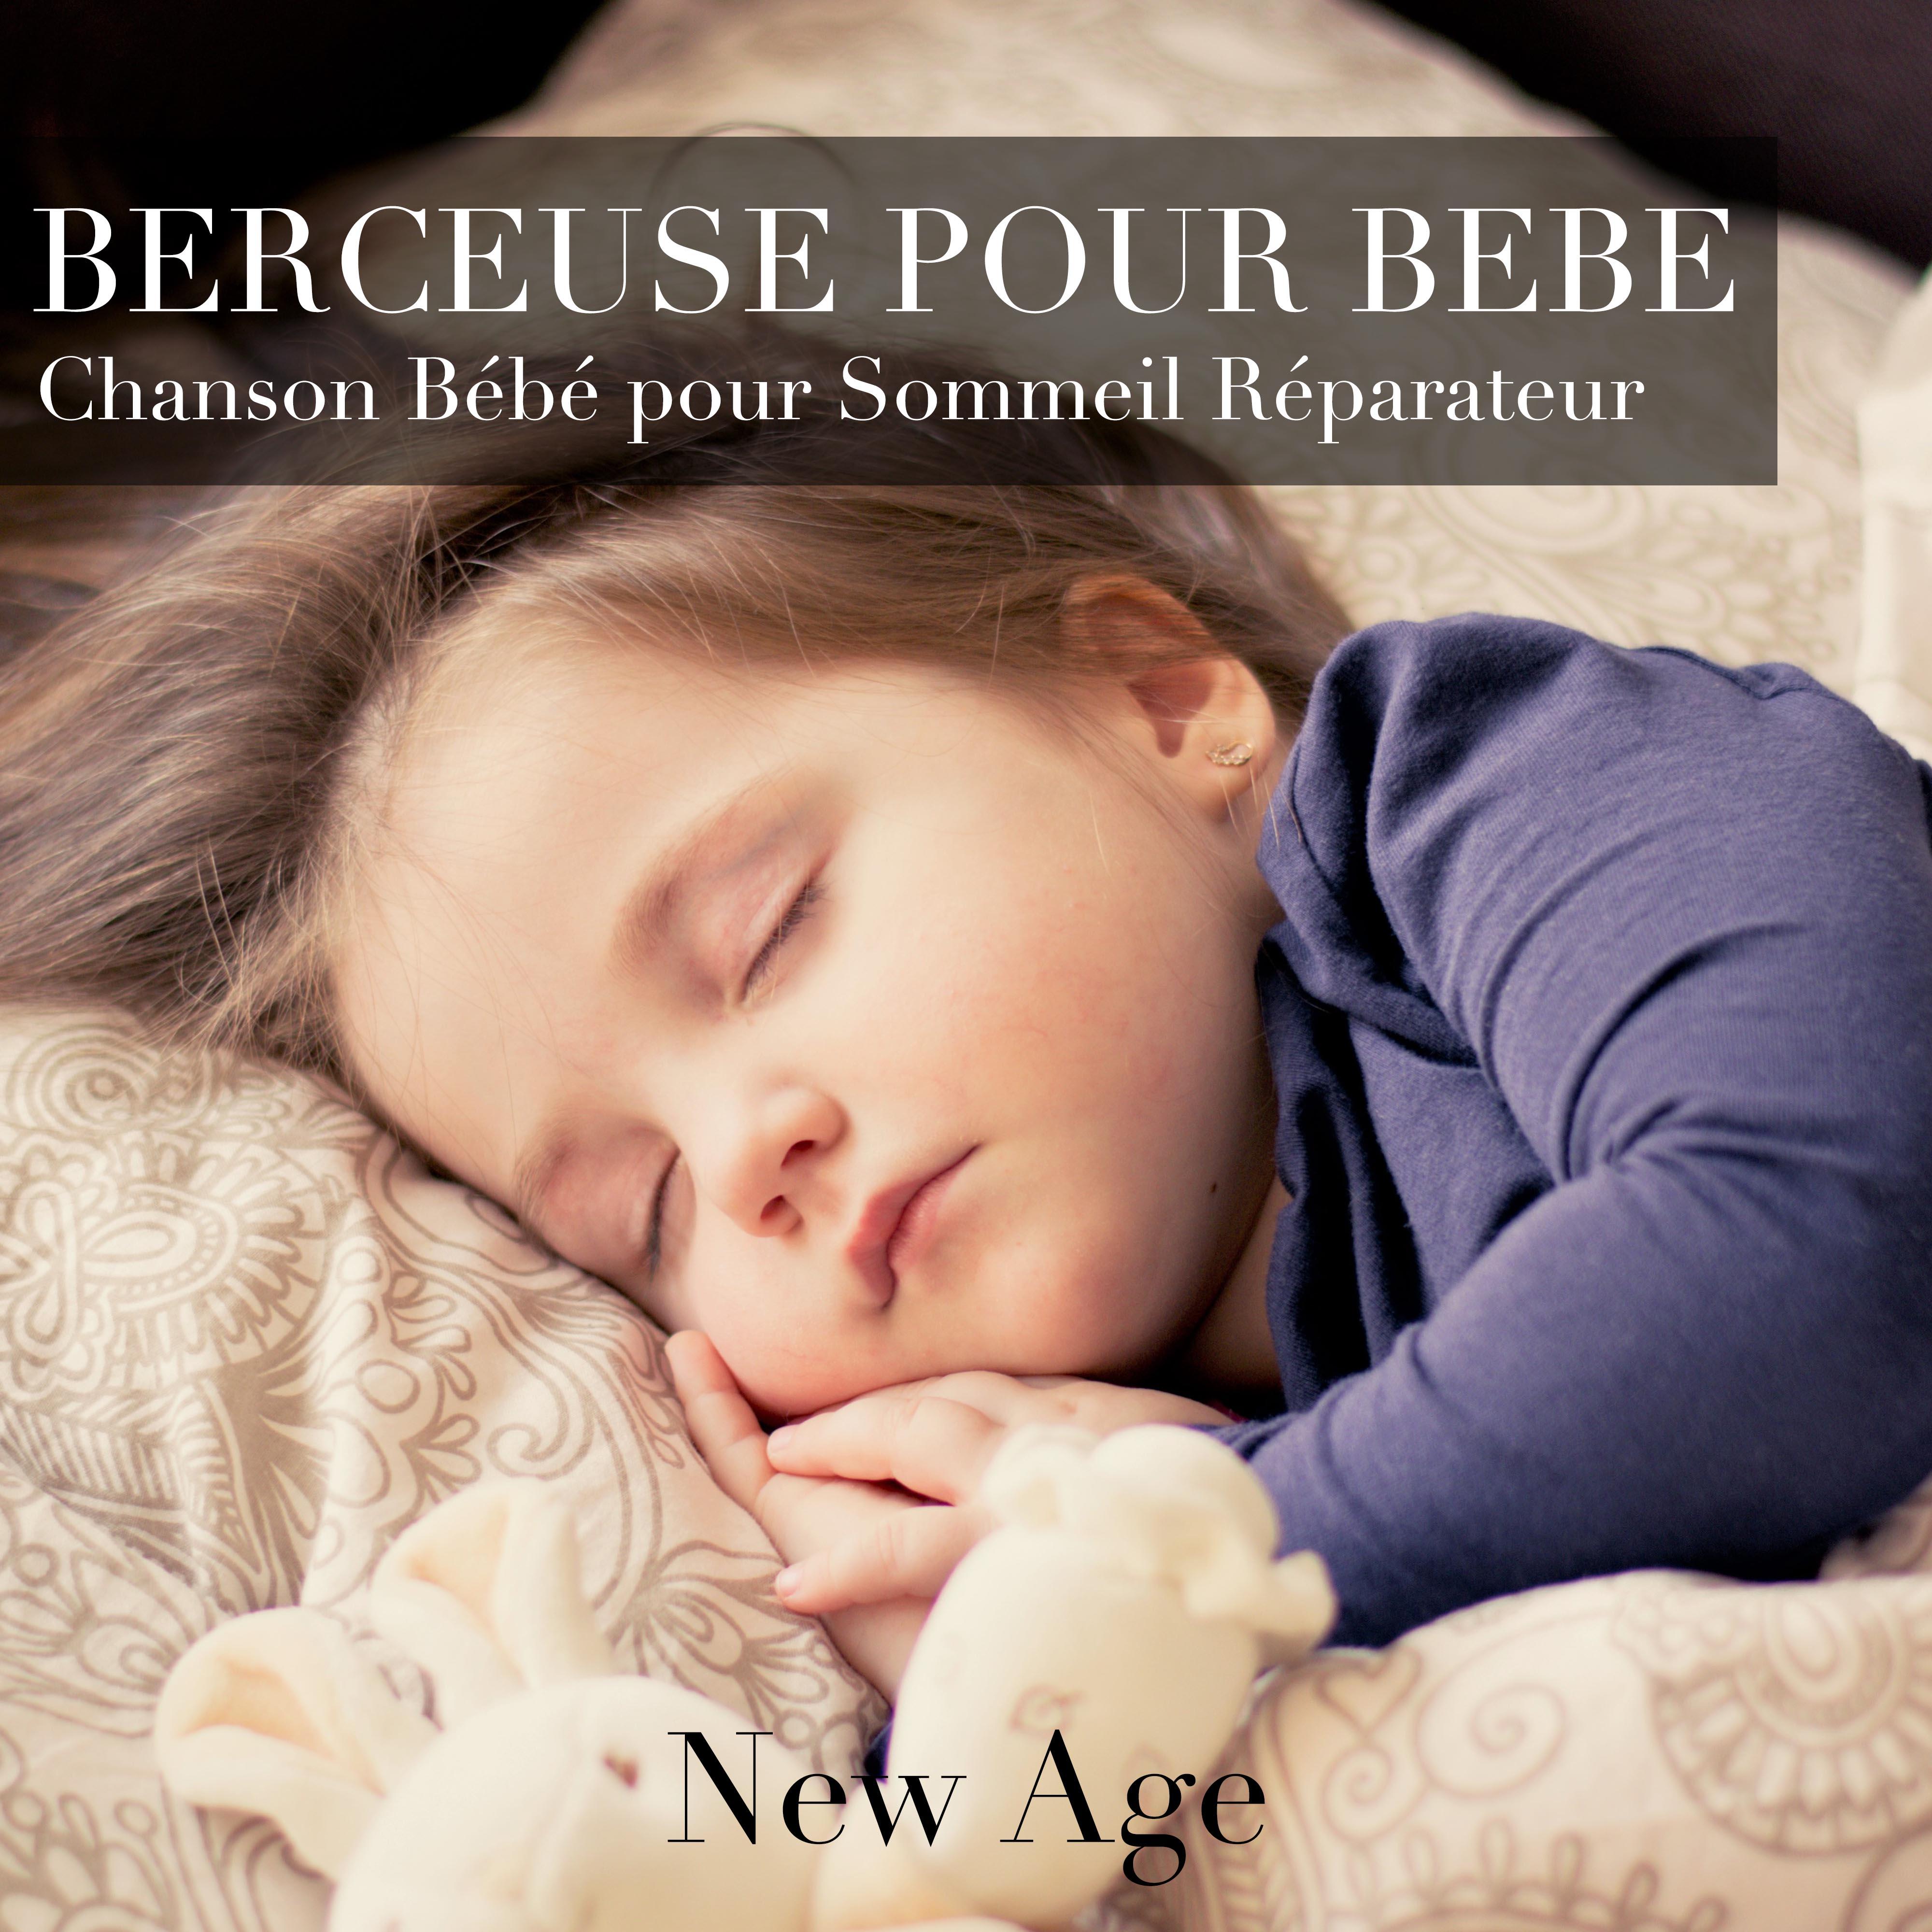 Berceuse pour Bebe: Chanson Bébé et Chansons de Détente New Age pour Sommeil Réparateur